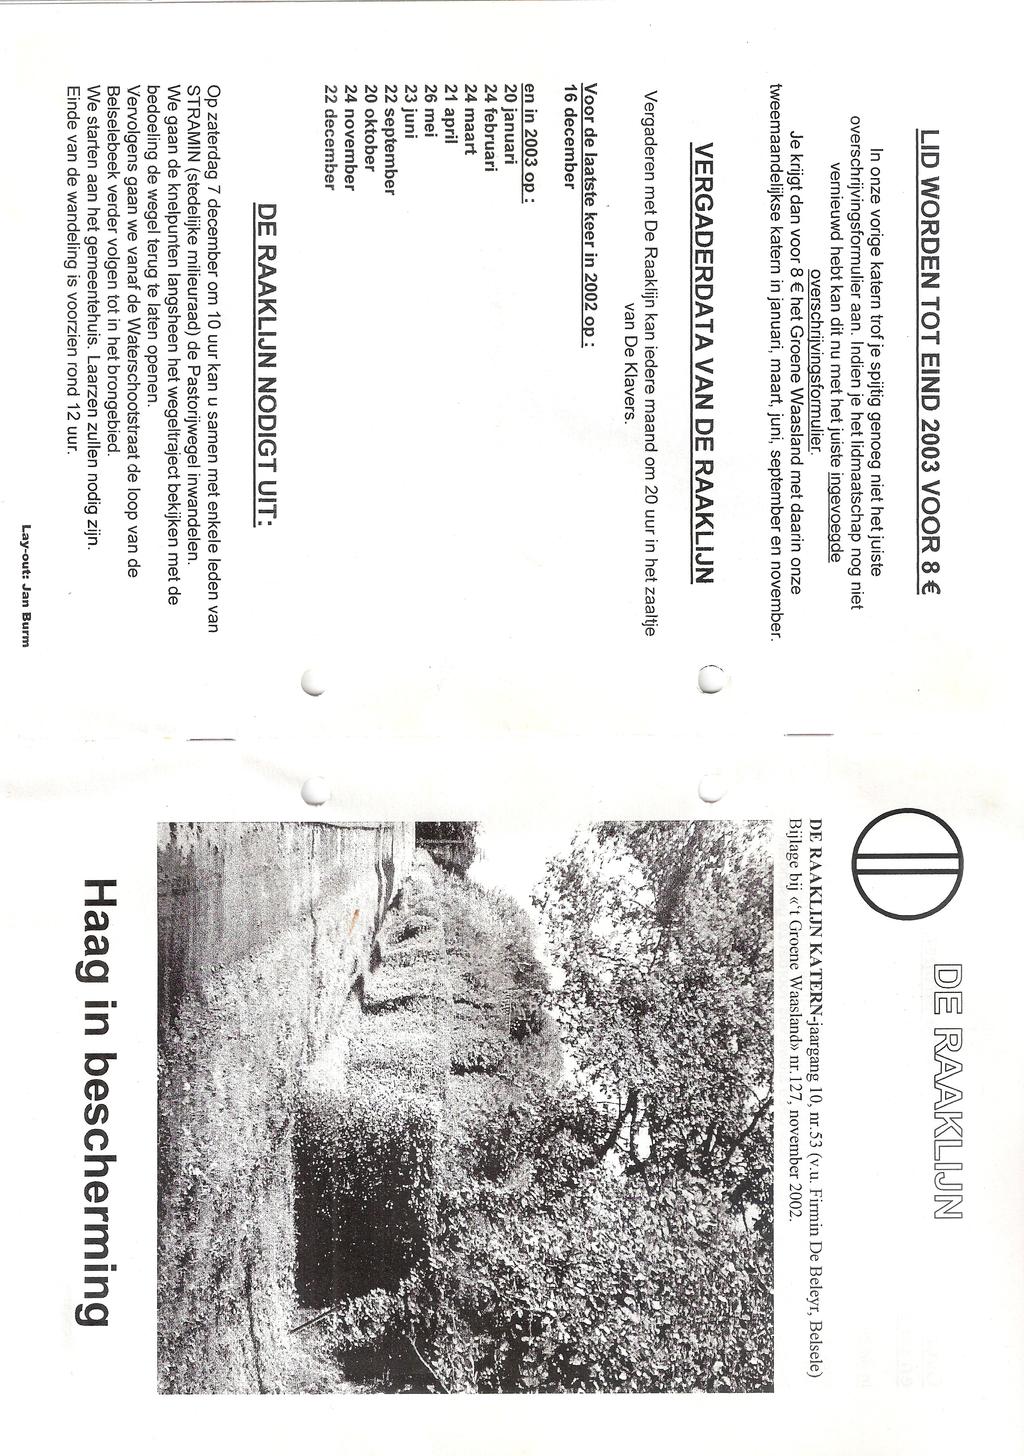 2002:september nr.52, jaargang 10 (8 pagina s) De Raaklijn klaagt de vernietiging van de slagboom in de Kouterstraat aan. De Raaklijn bespreekt de stiefmoederlijke behandeling van de trage wegen.